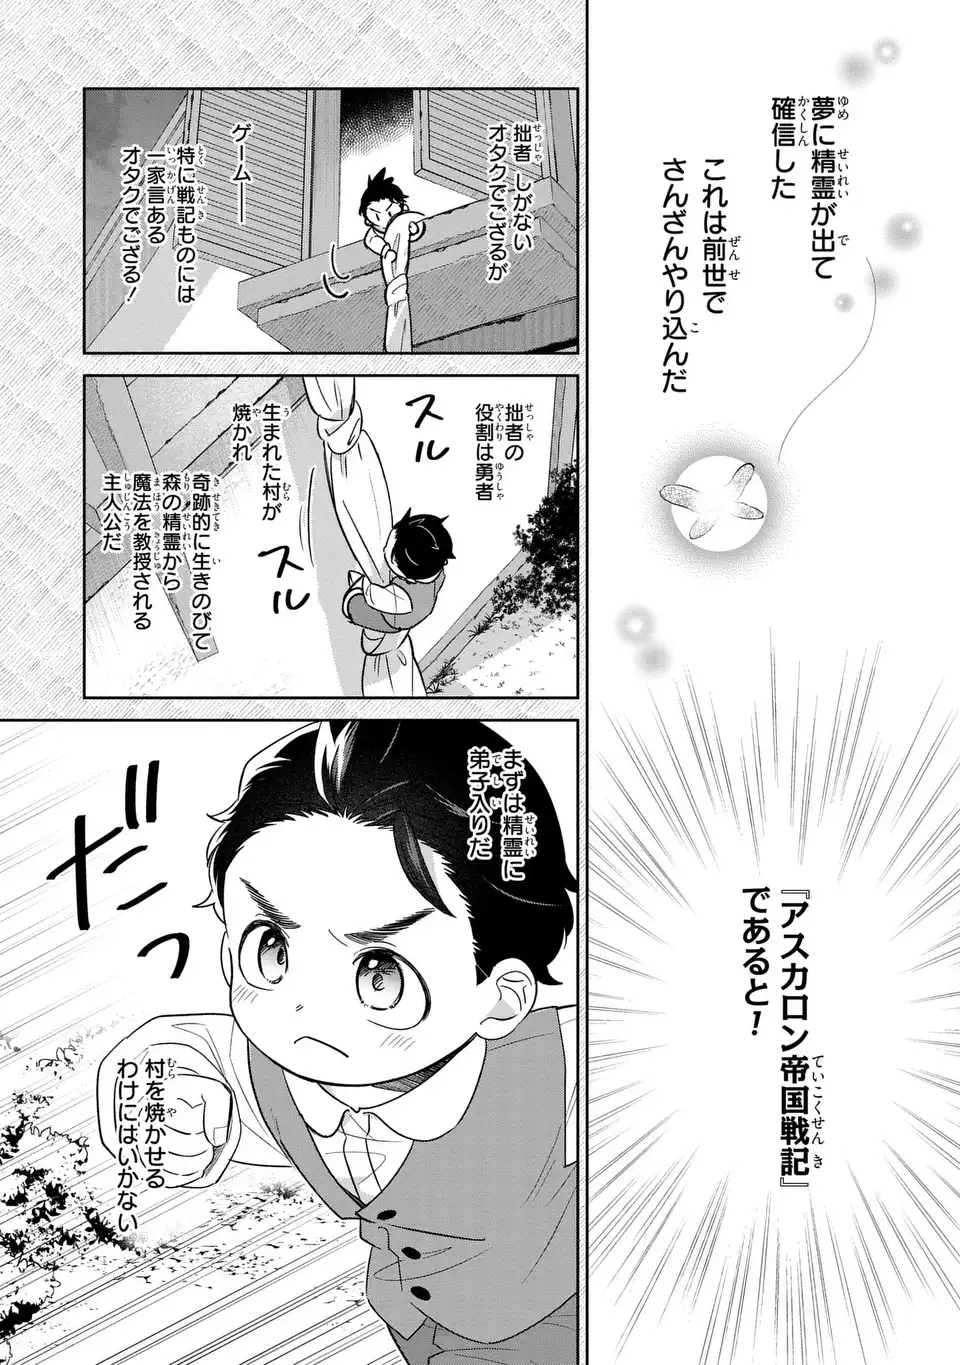 Akuyaku no Goreisoku no Dounika shitai Nichijou - Chapter 24 - Page 3